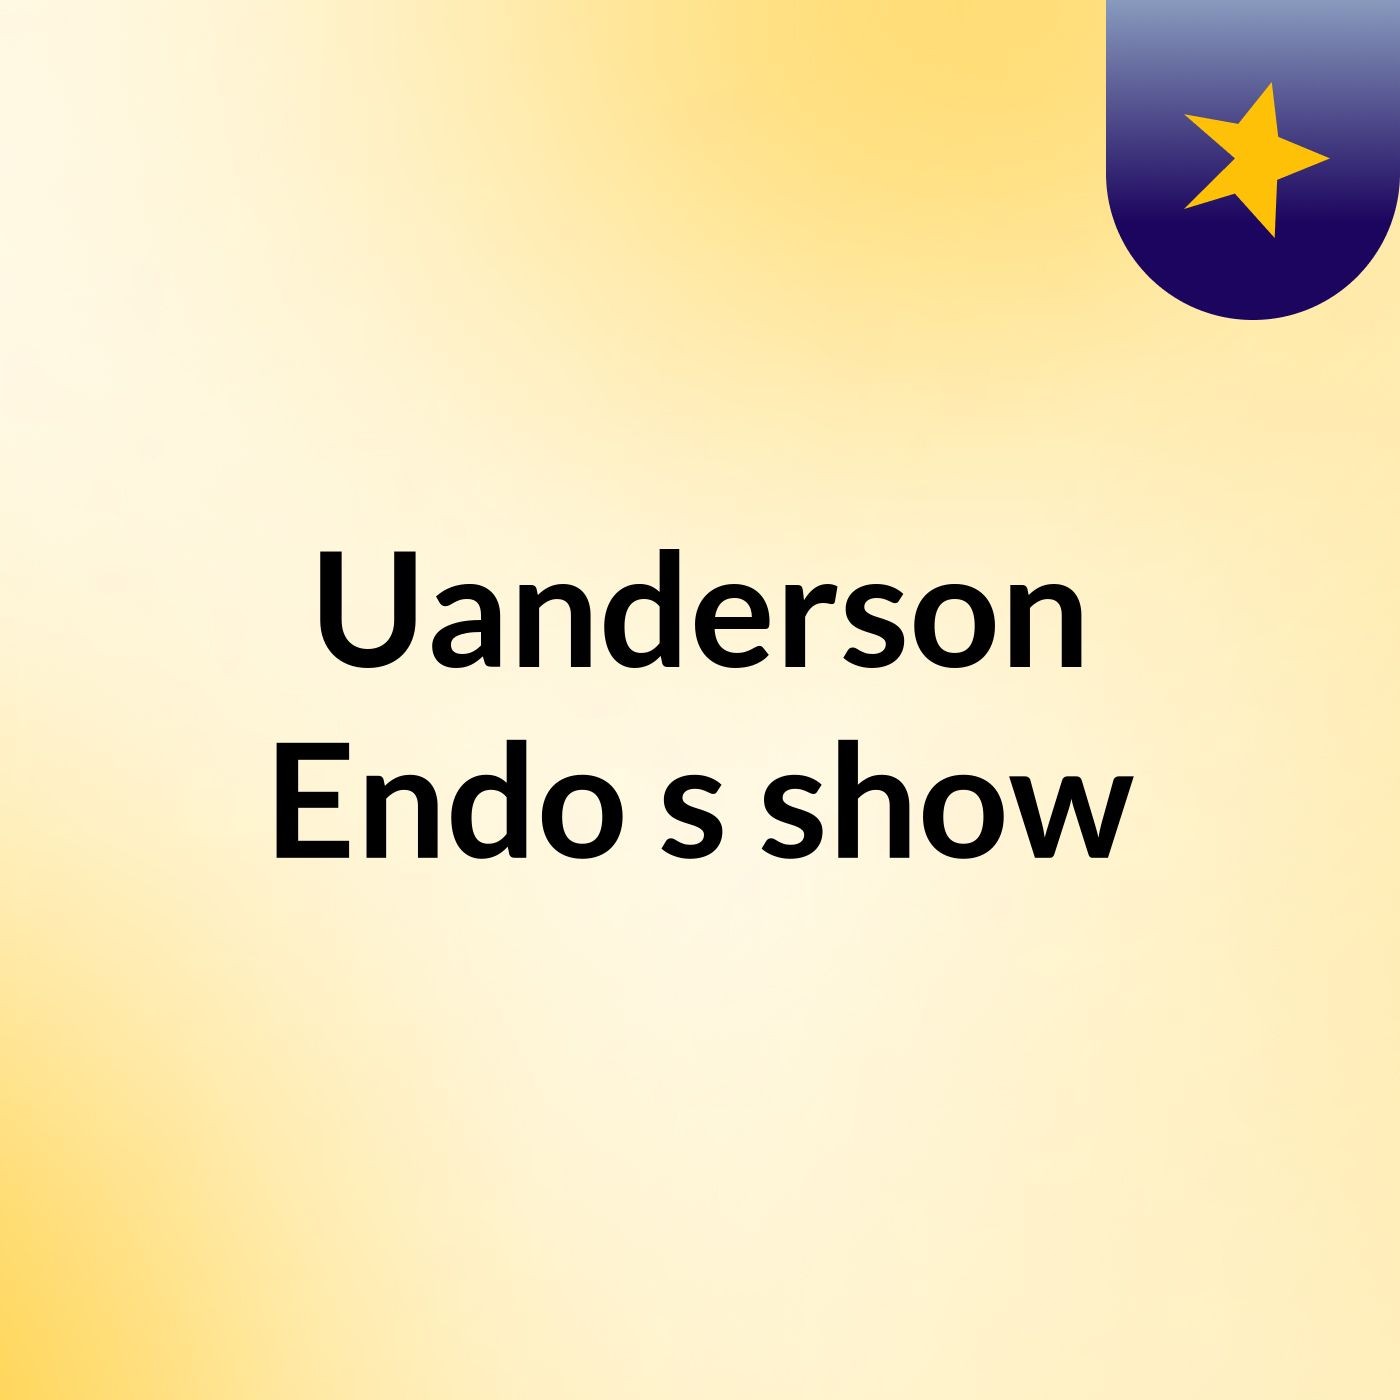 Uanderson Endo's show